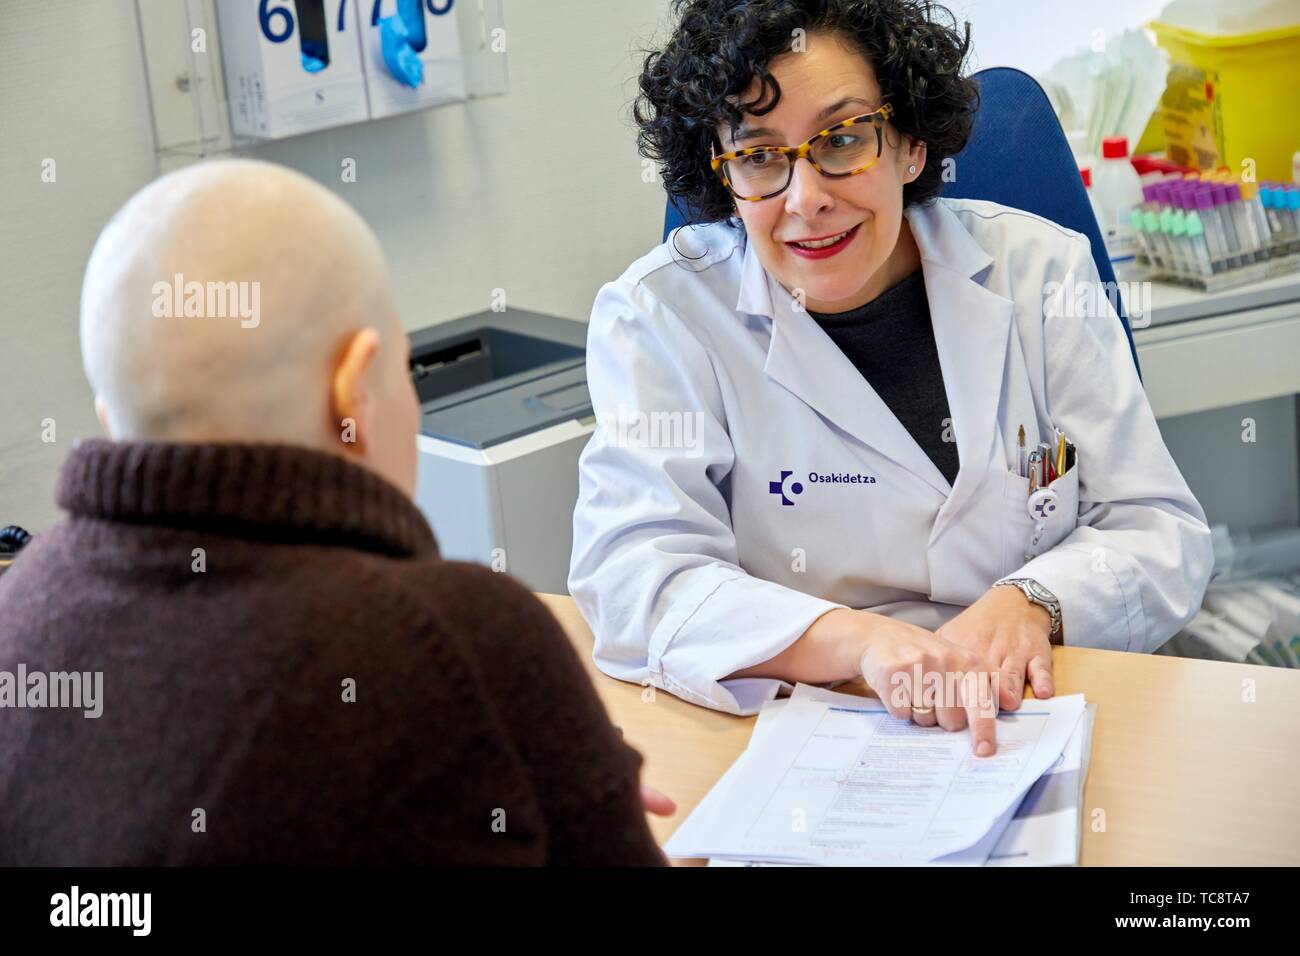 Médecin avec le cancer patient dans la consultation médicale, l'oncologie, l'hôpital Donostia, San Sebastian, Gipuzkoa, Pays Basque, Espagne Banque D'Images